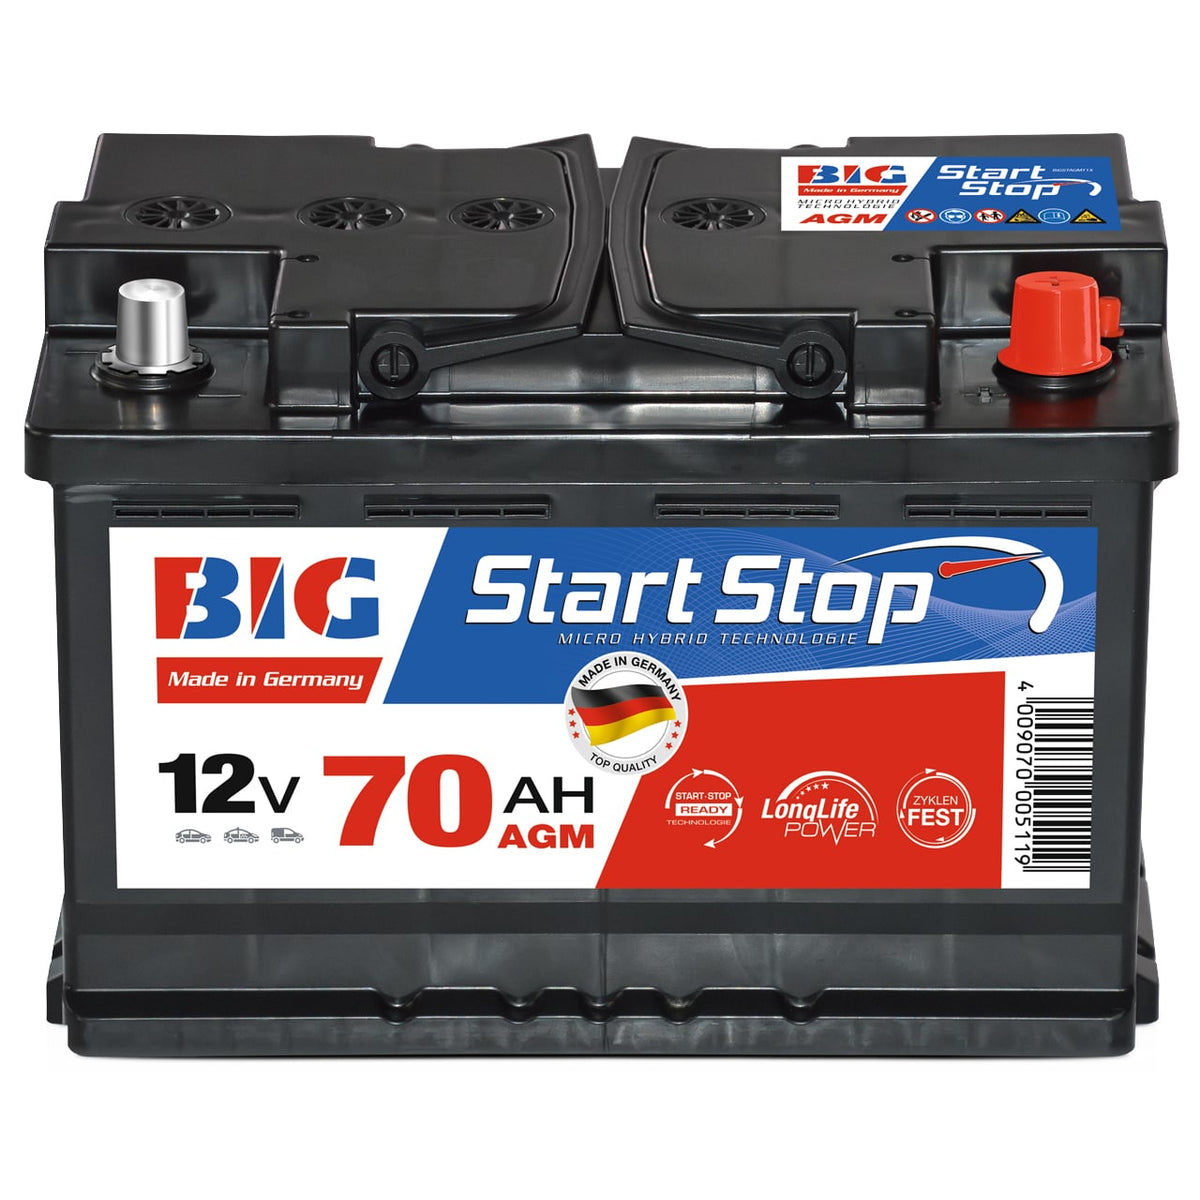 Autobatterie 65Ah kaufen - erhältlich sind auch Starterbatterien 62Ah, 63Ah  und 70Ah zum Preis ab 52,90€